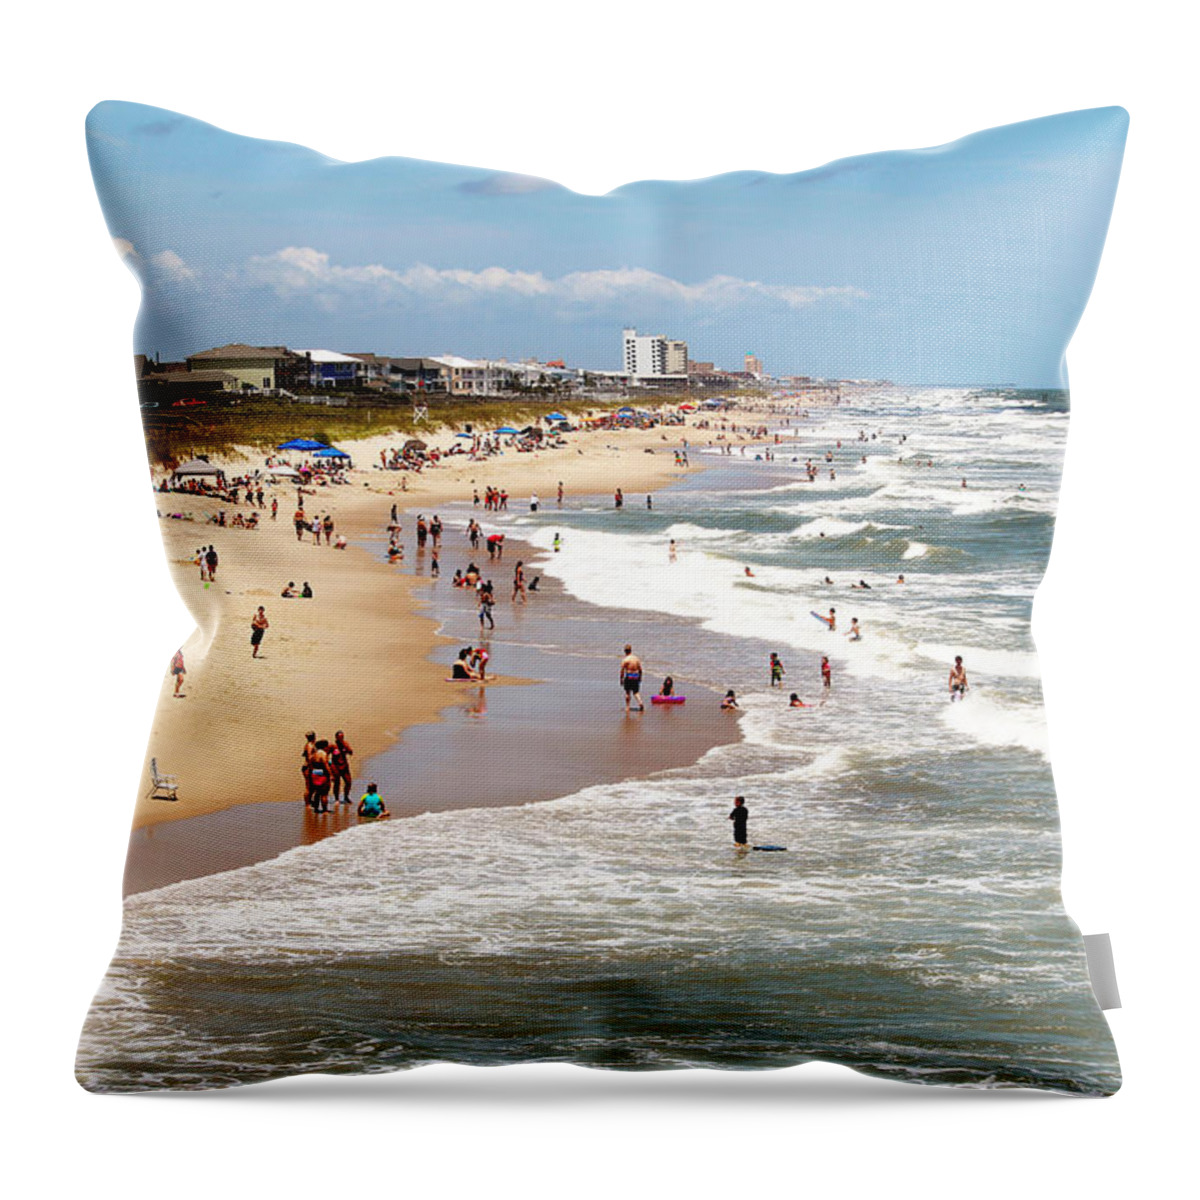 Beach Throw Pillow featuring the photograph Tourist At Kure Beach by Cynthia Guinn